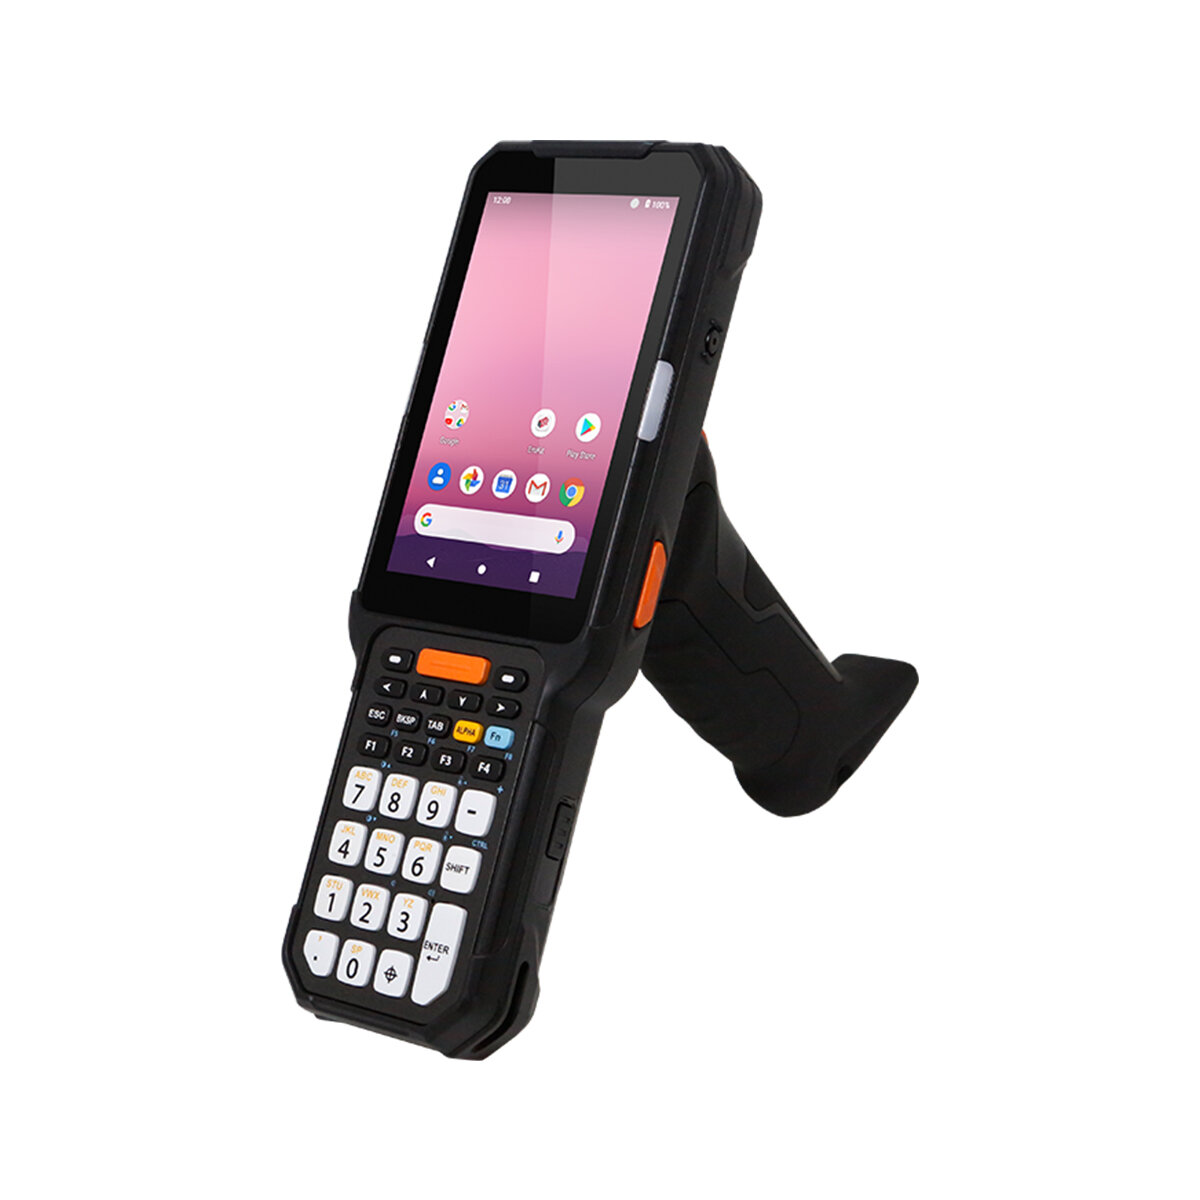 Распродажа! Терминал сбора данных Point Mobile PM451 (WiFi/BT, 4G/64G, NFC, Numeric, 2D imager(N6703), Camera, English OS)